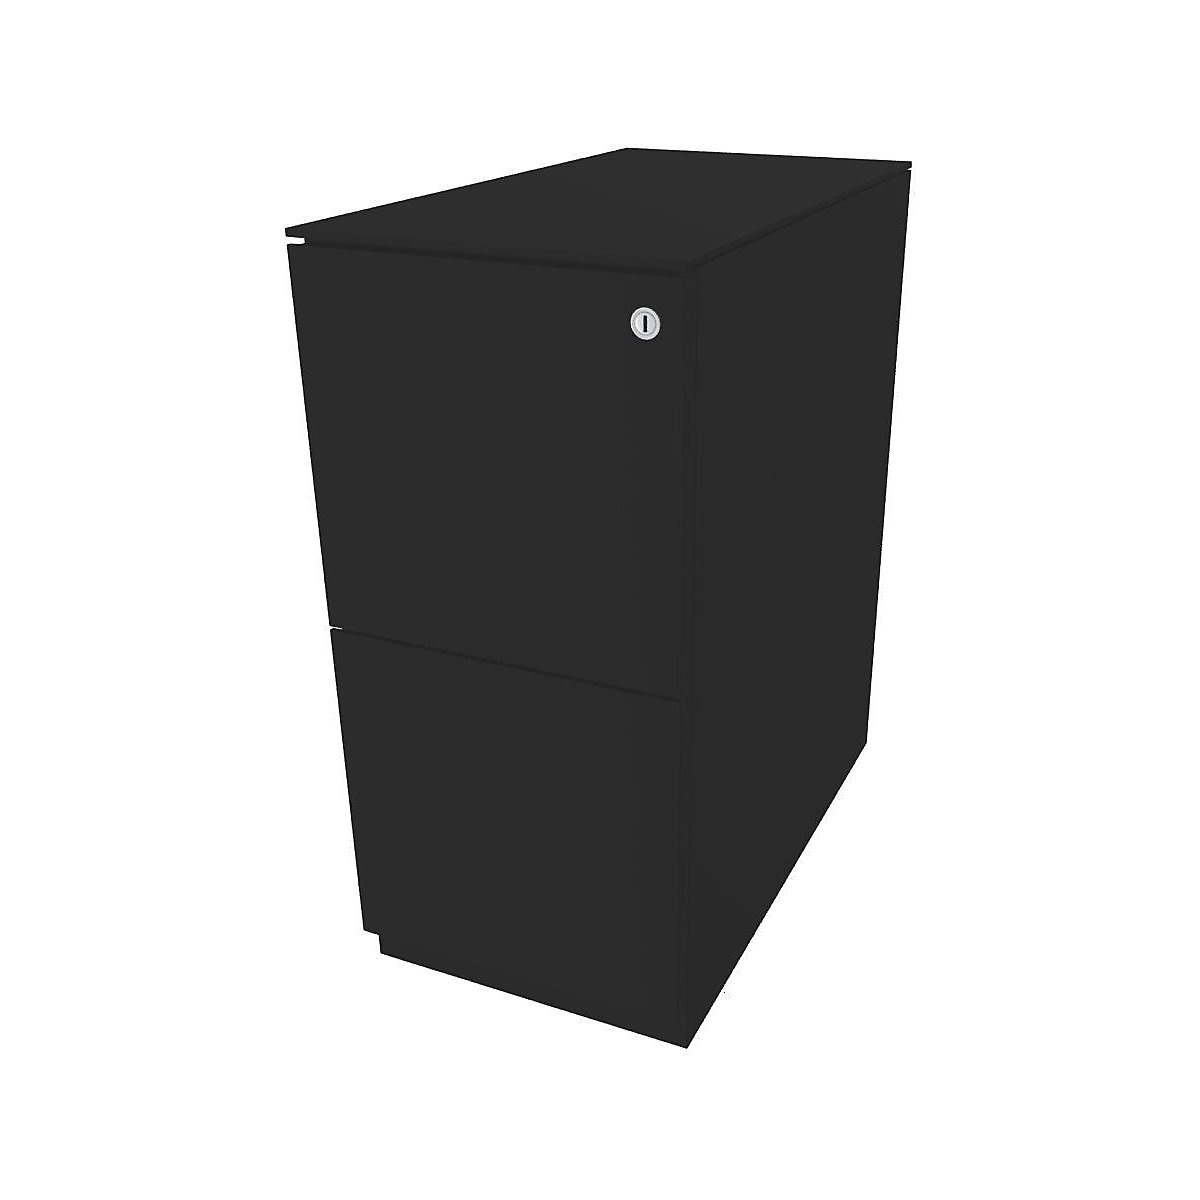 Pokretni ladičar Note™, s 2 elementa za vješanje registratora – BISLEY, VxŠ 652 x 300 mm, s gornjim dijelom, u crnoj boji-13